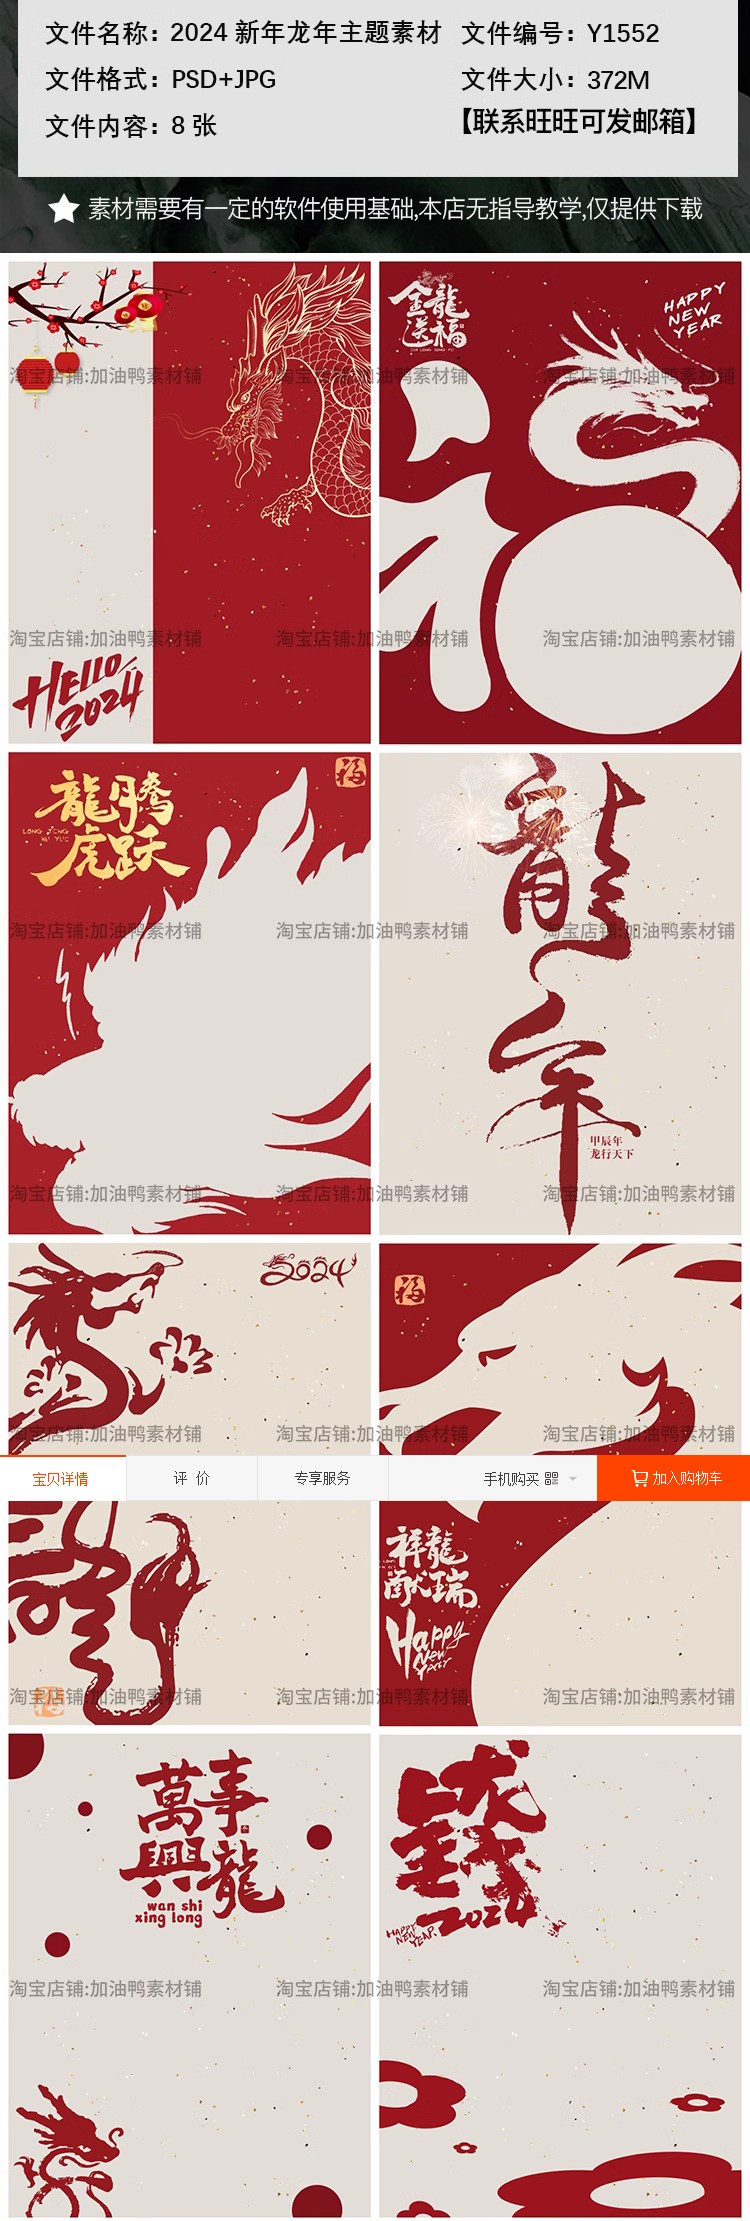 Y1552, Bộ 8 Psd Chất Liệu Thiết Kế Poster ảnh Trẻ Em Năm Mới Jiachen Lễ Hội Mùa Xuân Năm Con Rồng 2024 (2)